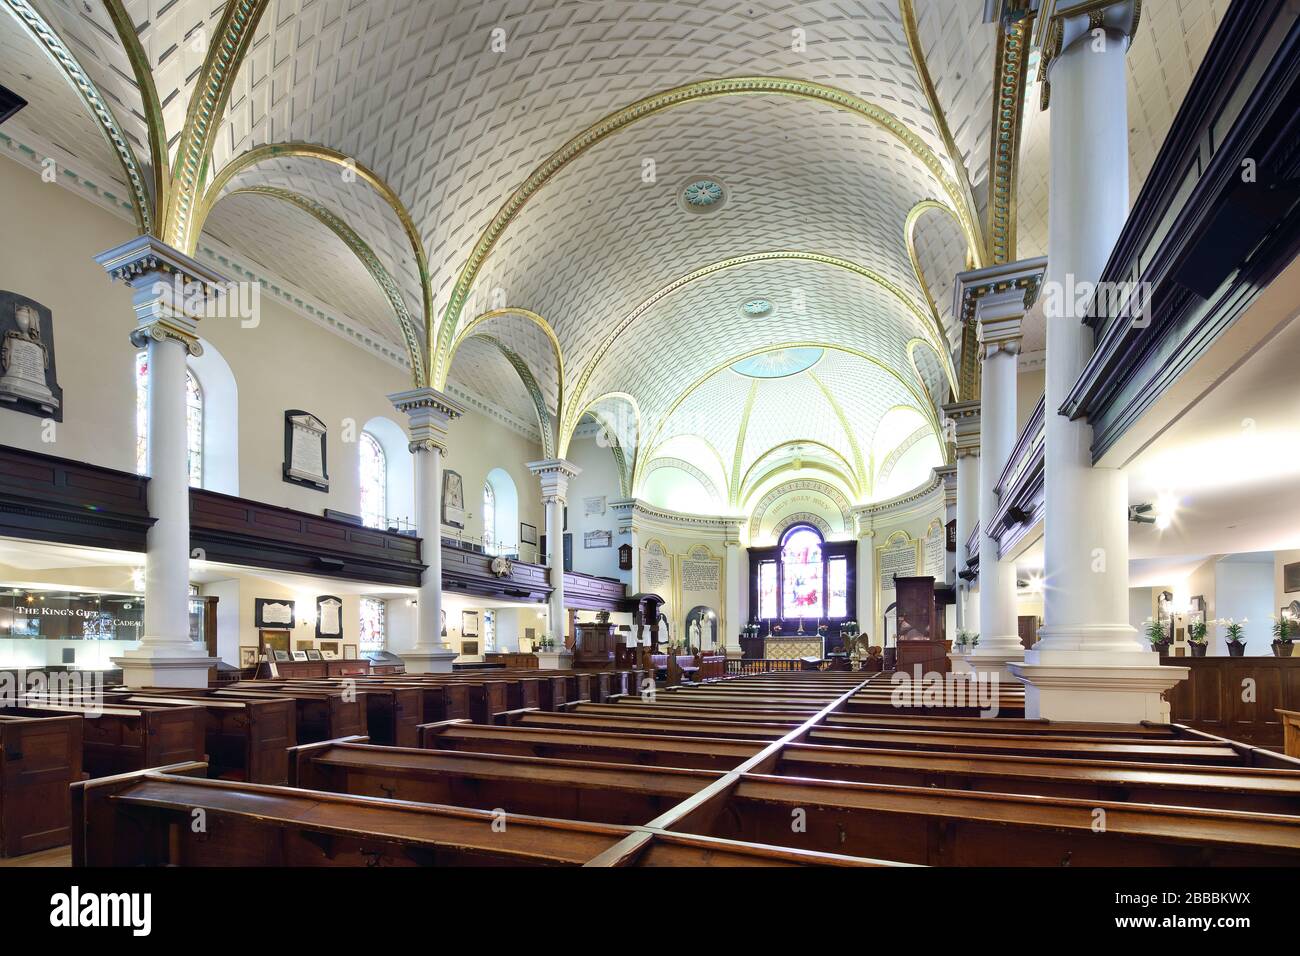 Nave y altar en la Catedral de la Santísima Trinidad en la ciudad de Quebec, Quebec, Canadá Foto de stock